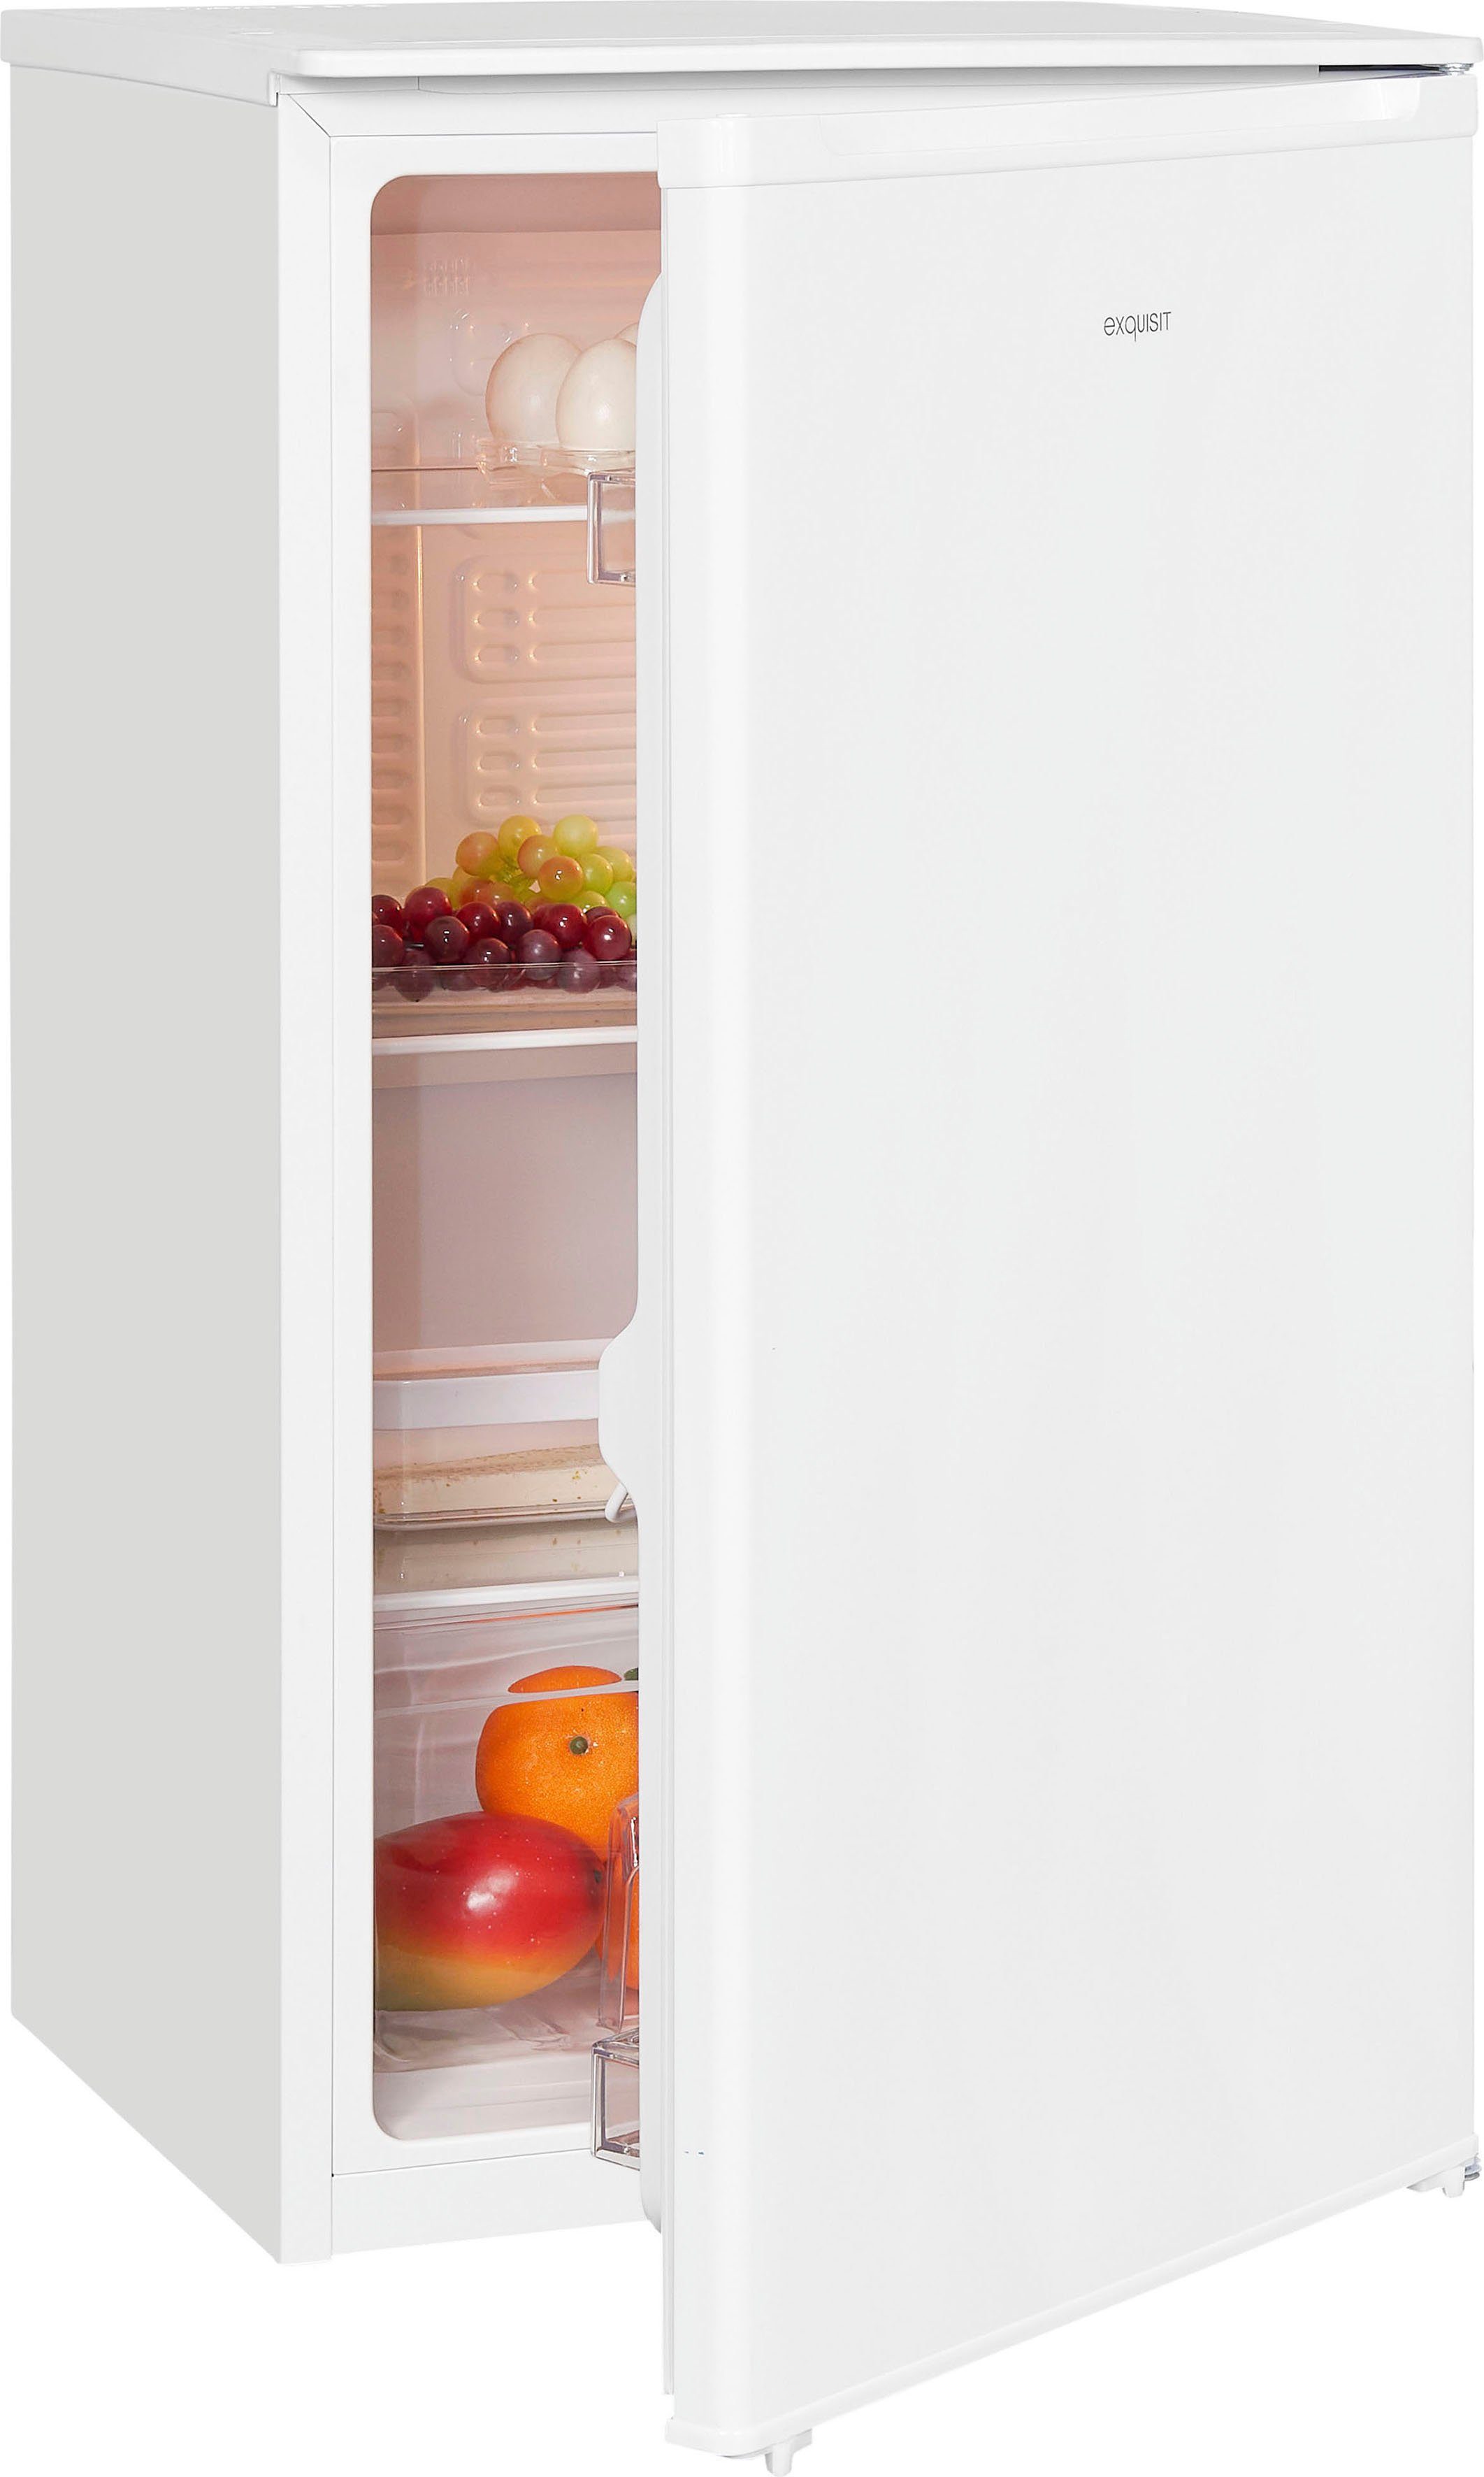 exquisit Vollraumkühlschrank KS116-V-041E weiss, 85 cm hoch, 48 cm breit | Kühlschränke